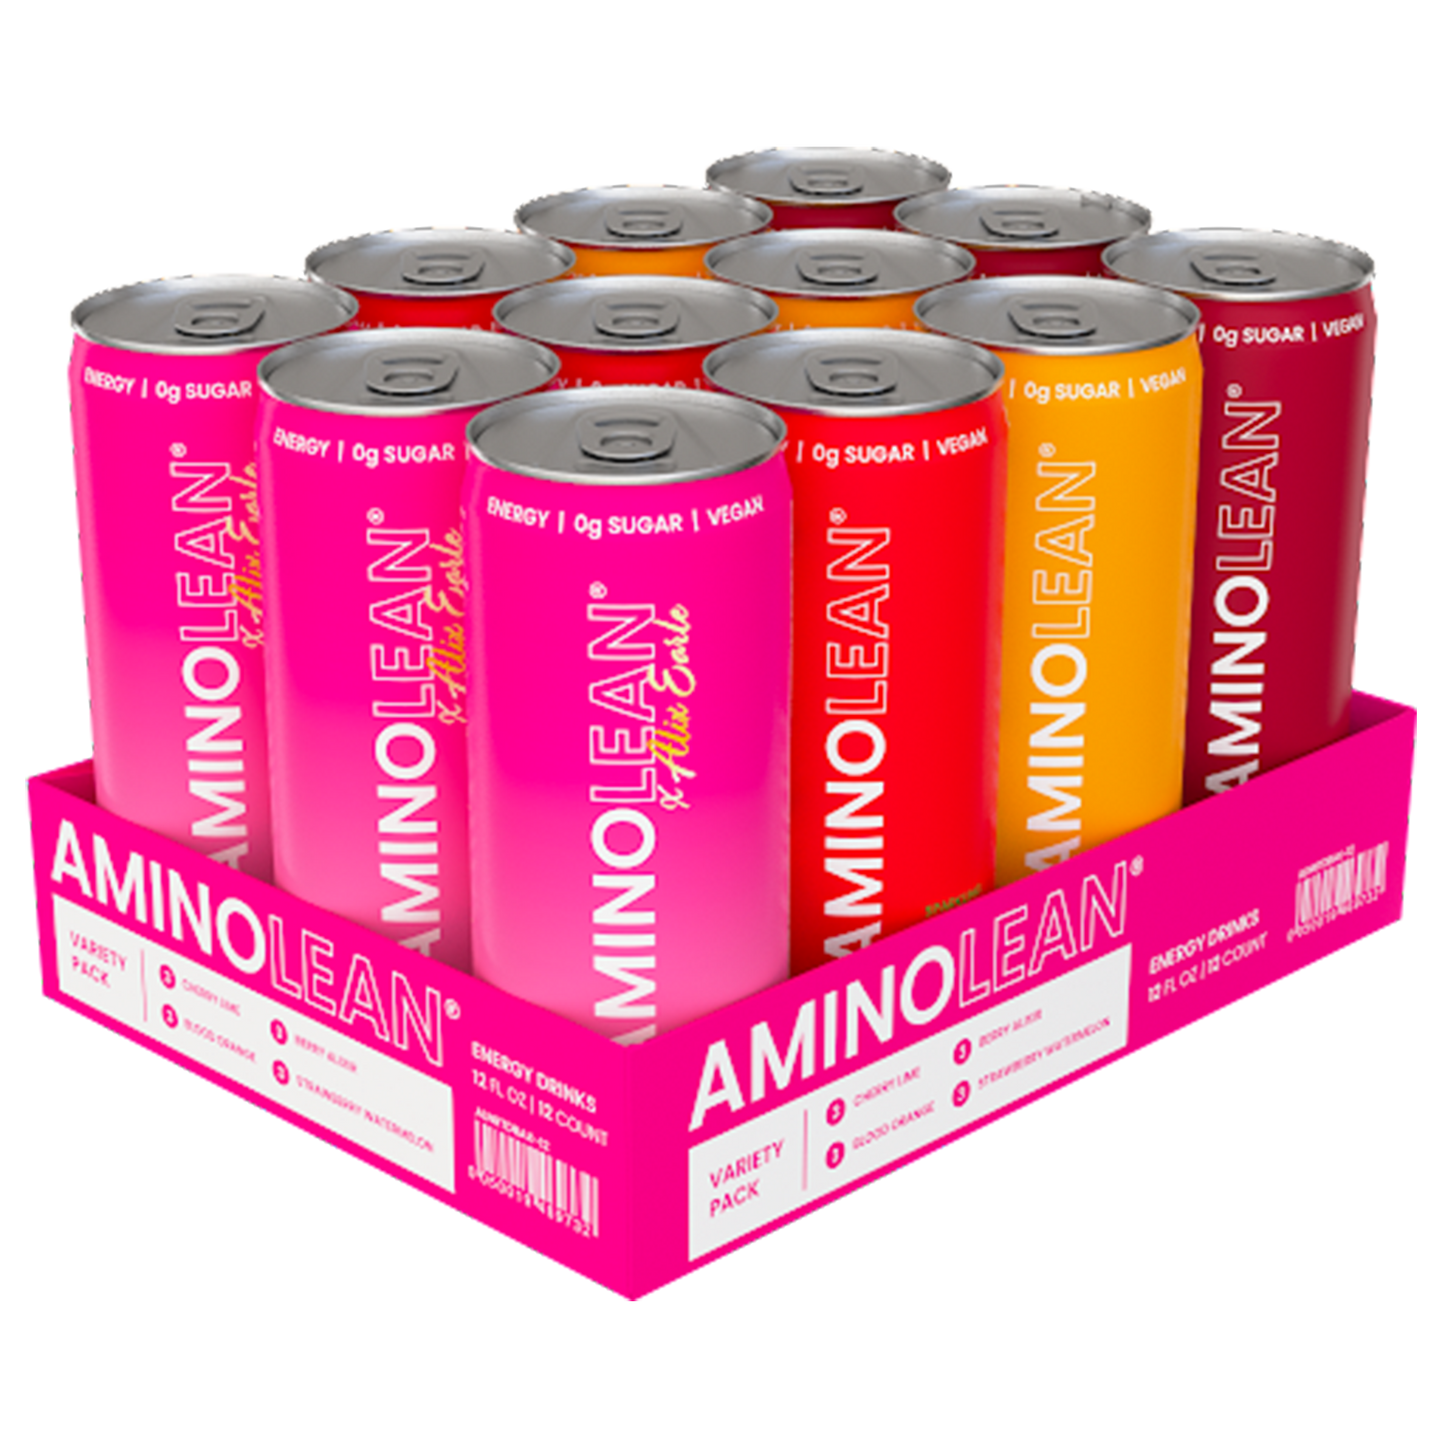 AminoLean Energy Drink - Variety Pack